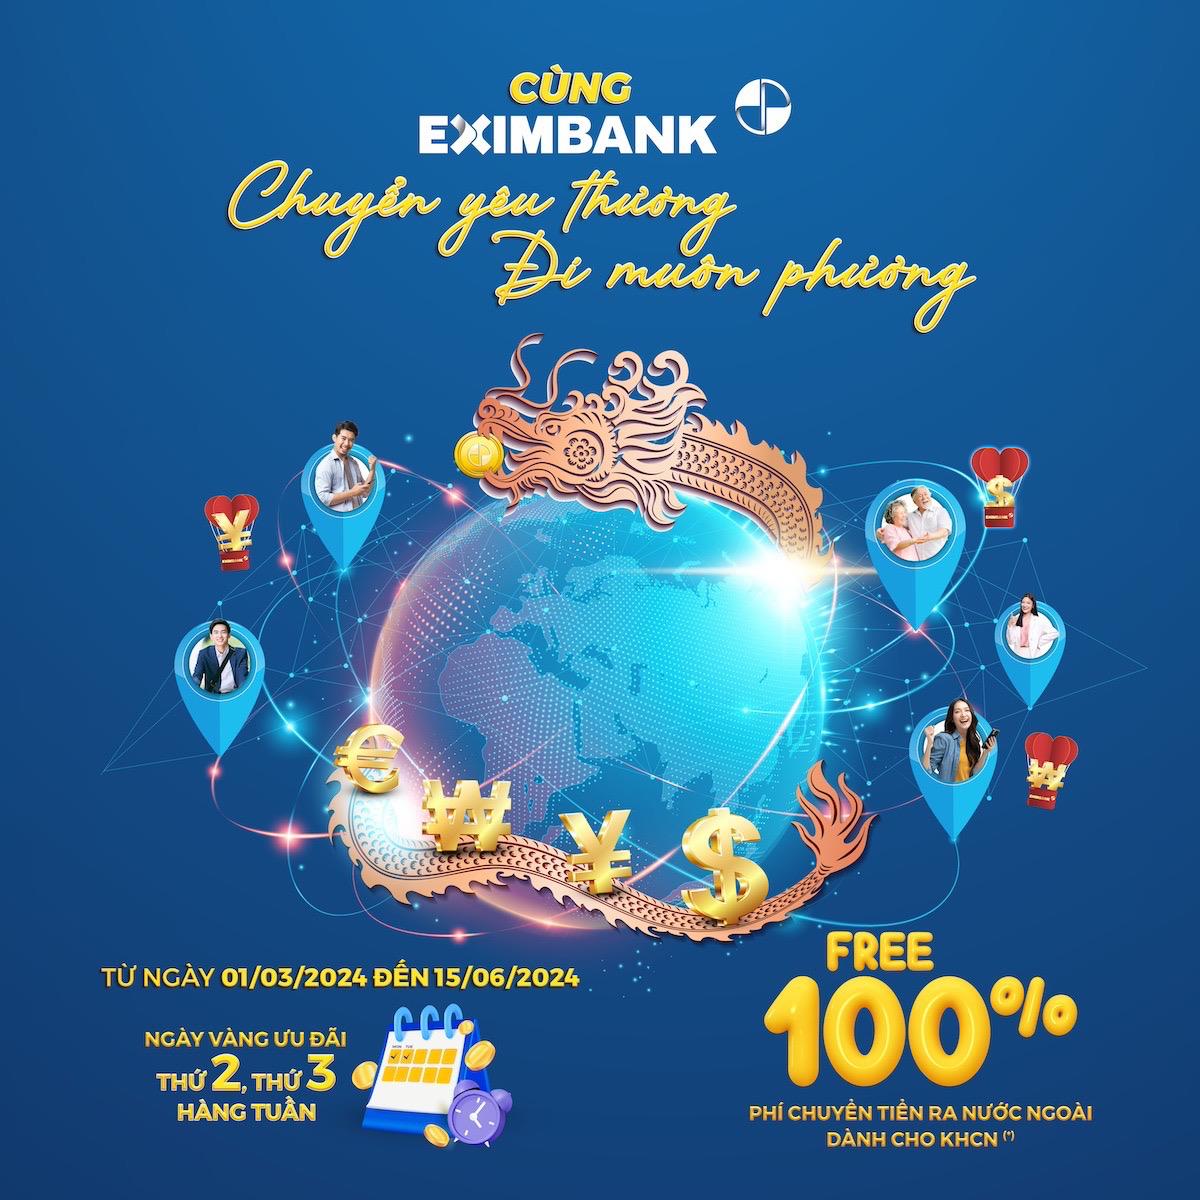 Eximbank tung chương trình ưu đãi chuyển tiền lớn nhất cho khách hàng cá nhân- Ảnh 1.